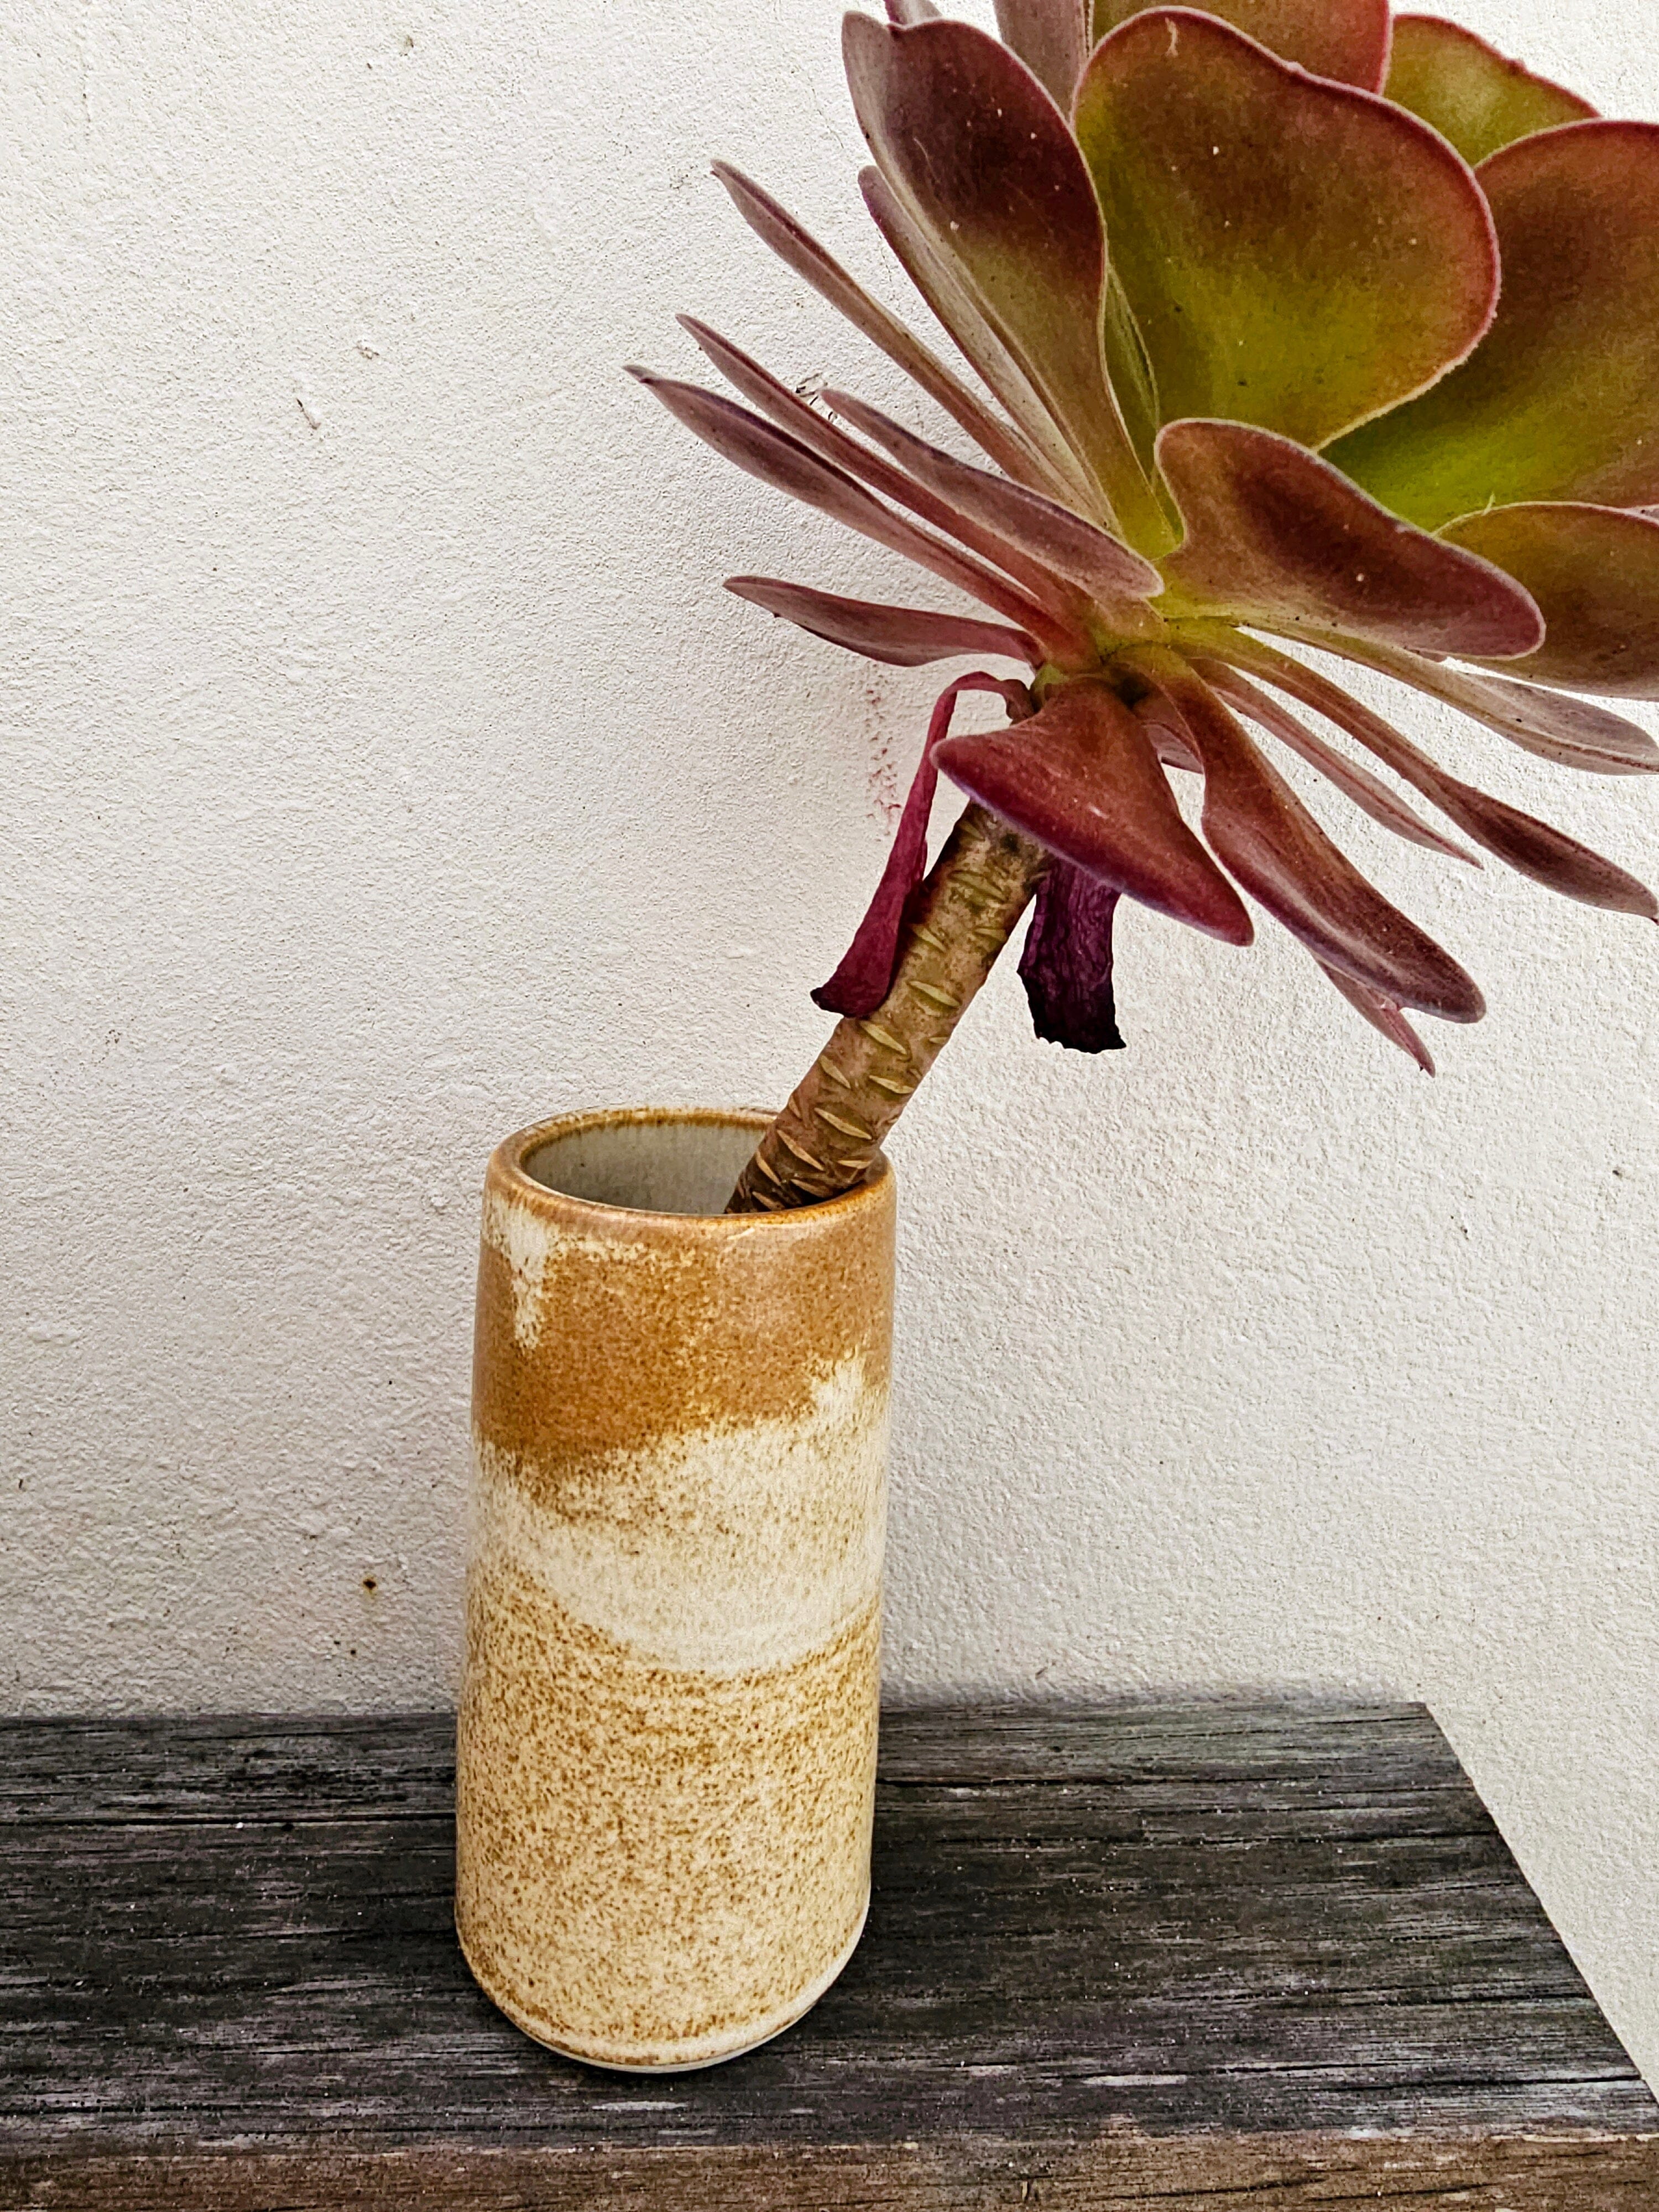 Handmade Ceramic Vases - The Little Mud Room Vase The Little Mud Room Med Rustic 110mm 